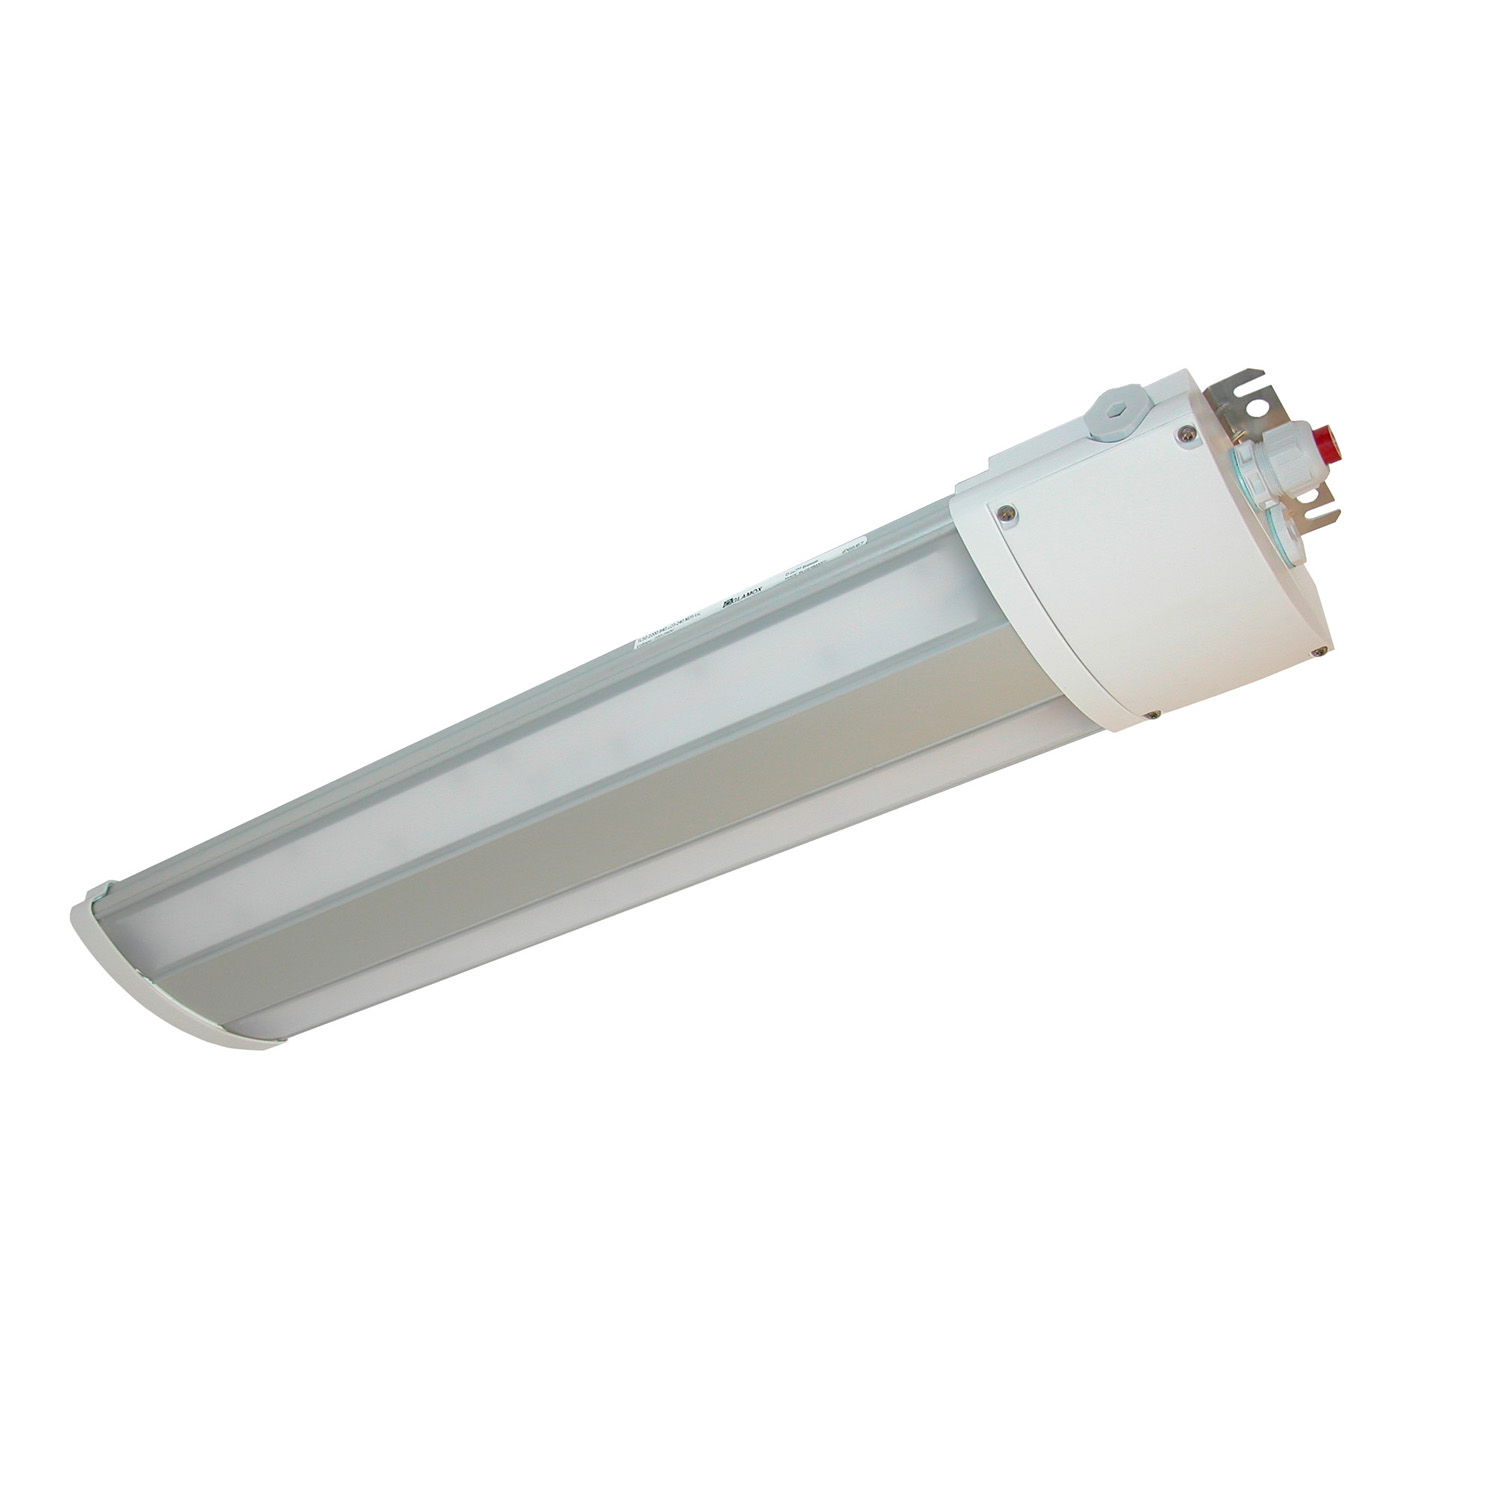 TL50124000 Watertight LED luminaire multipurpose, TL50 2200 840 220-240 M25 GL